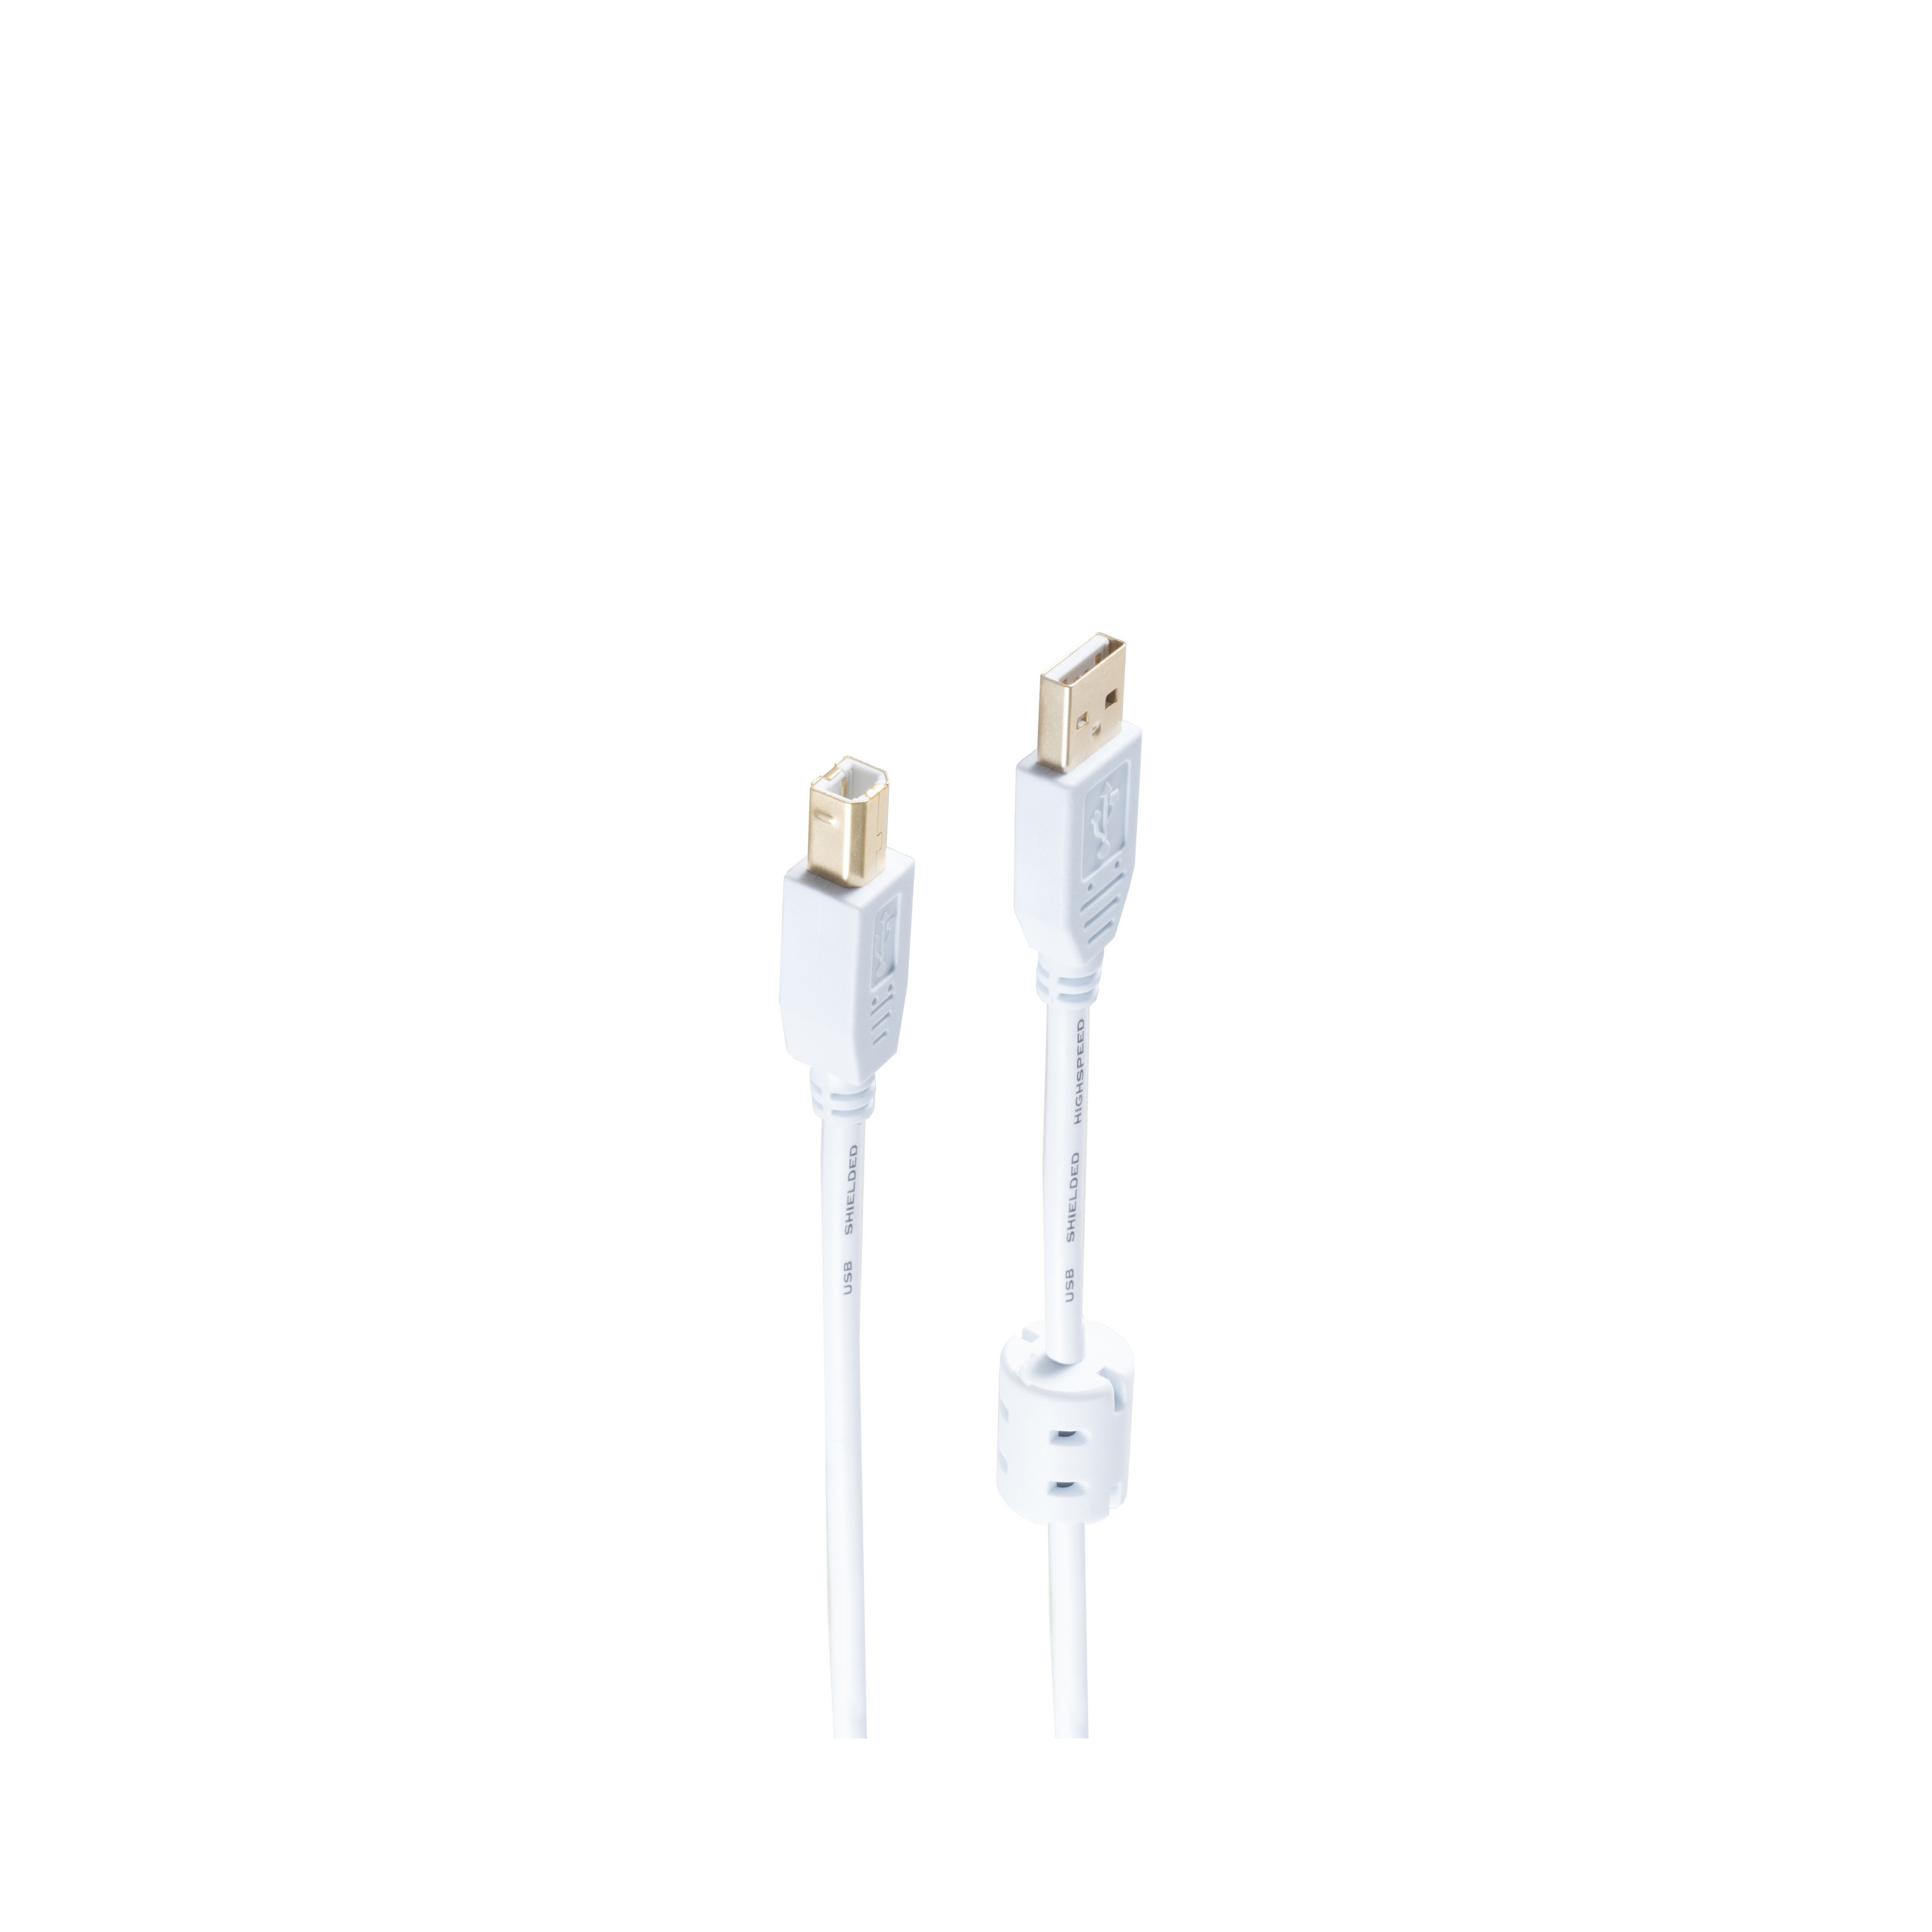 Kabel 2.0 weiß USB SHIVERPEAKS 3m Kabel A USB St. St.+Ferrit/B USB verg.